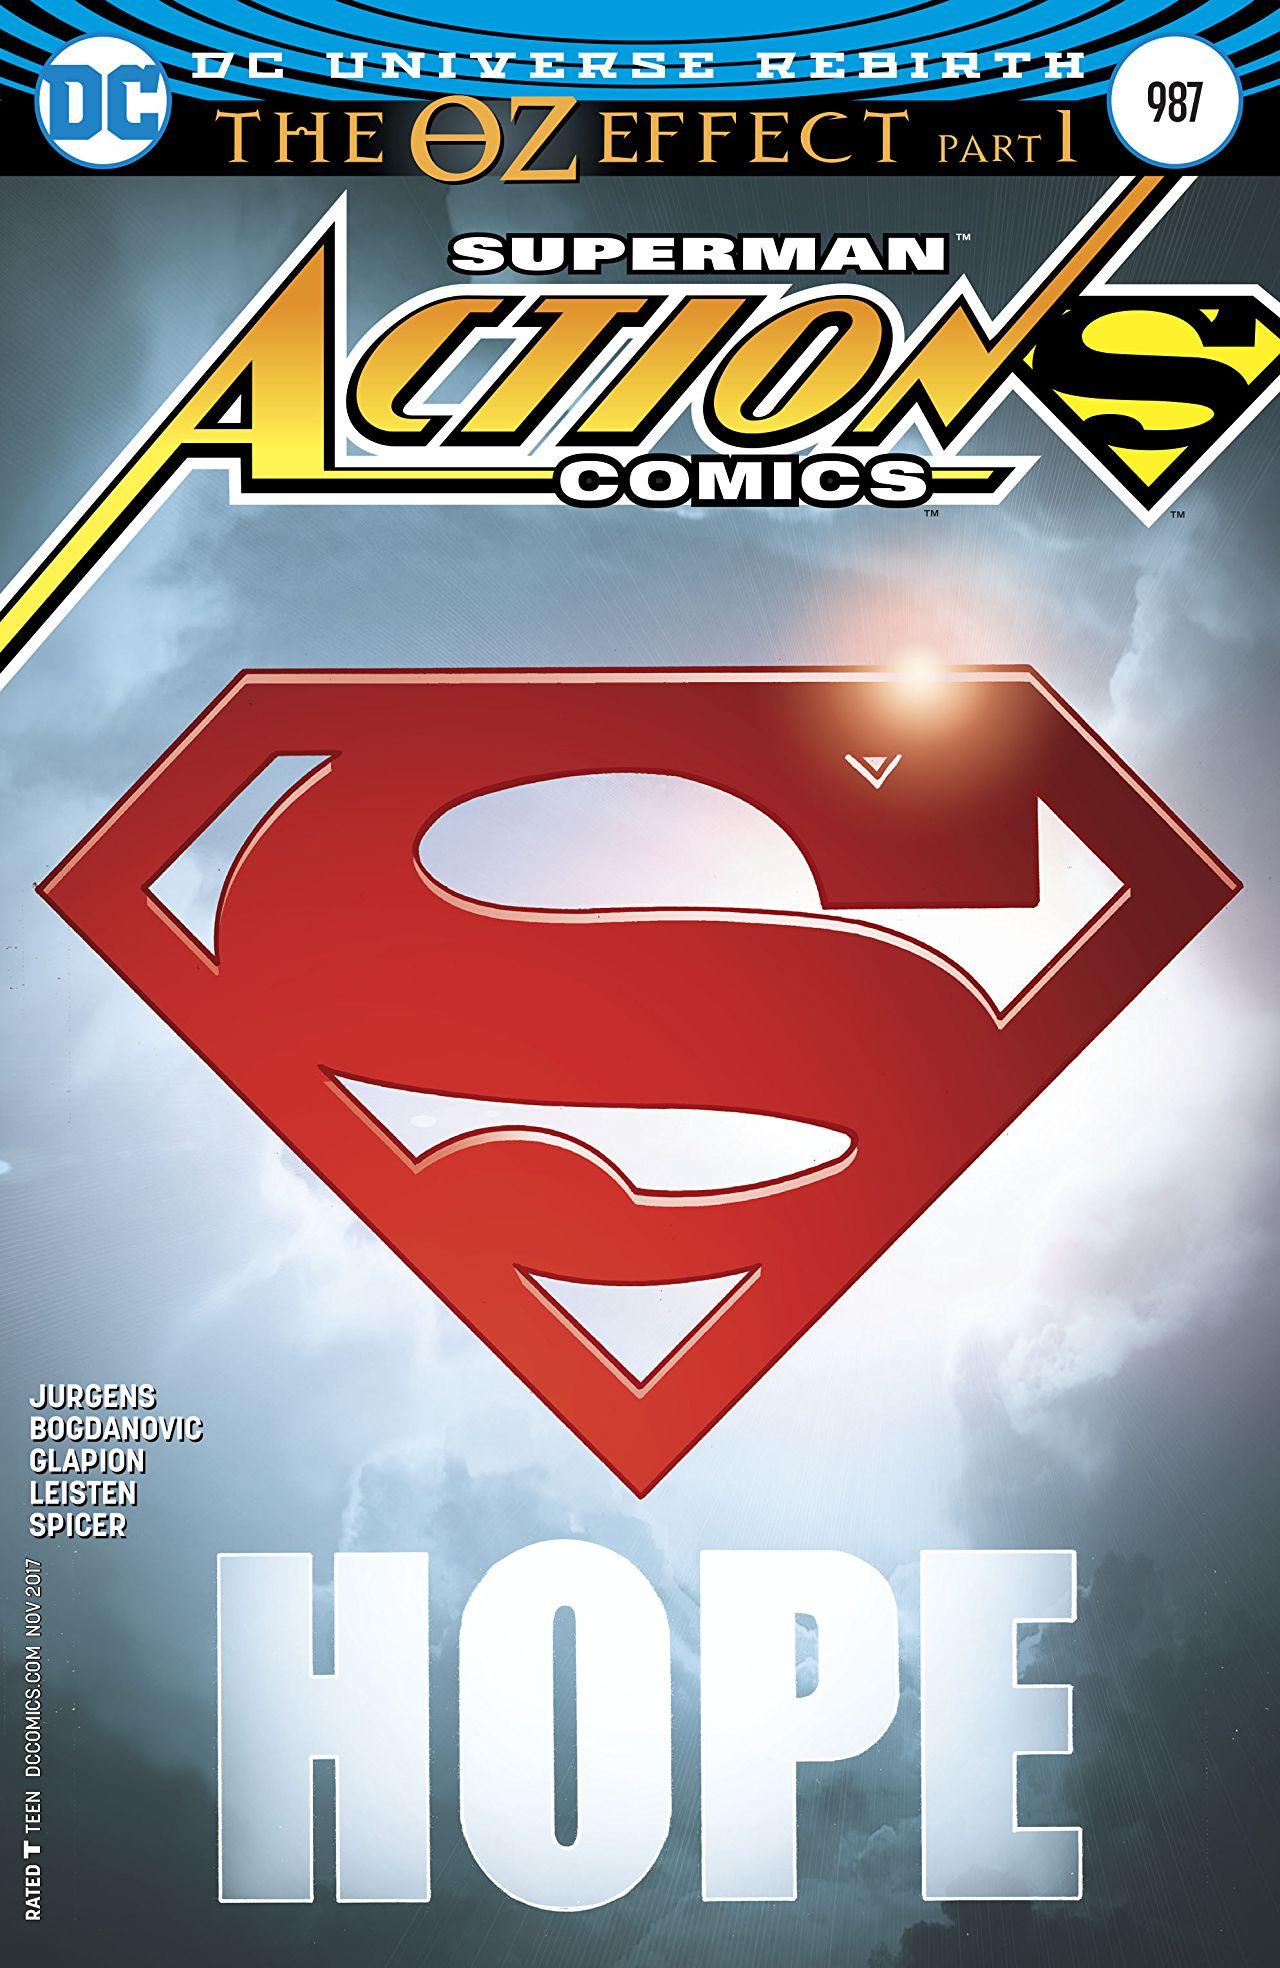 Action Comics Vol. 1 #987